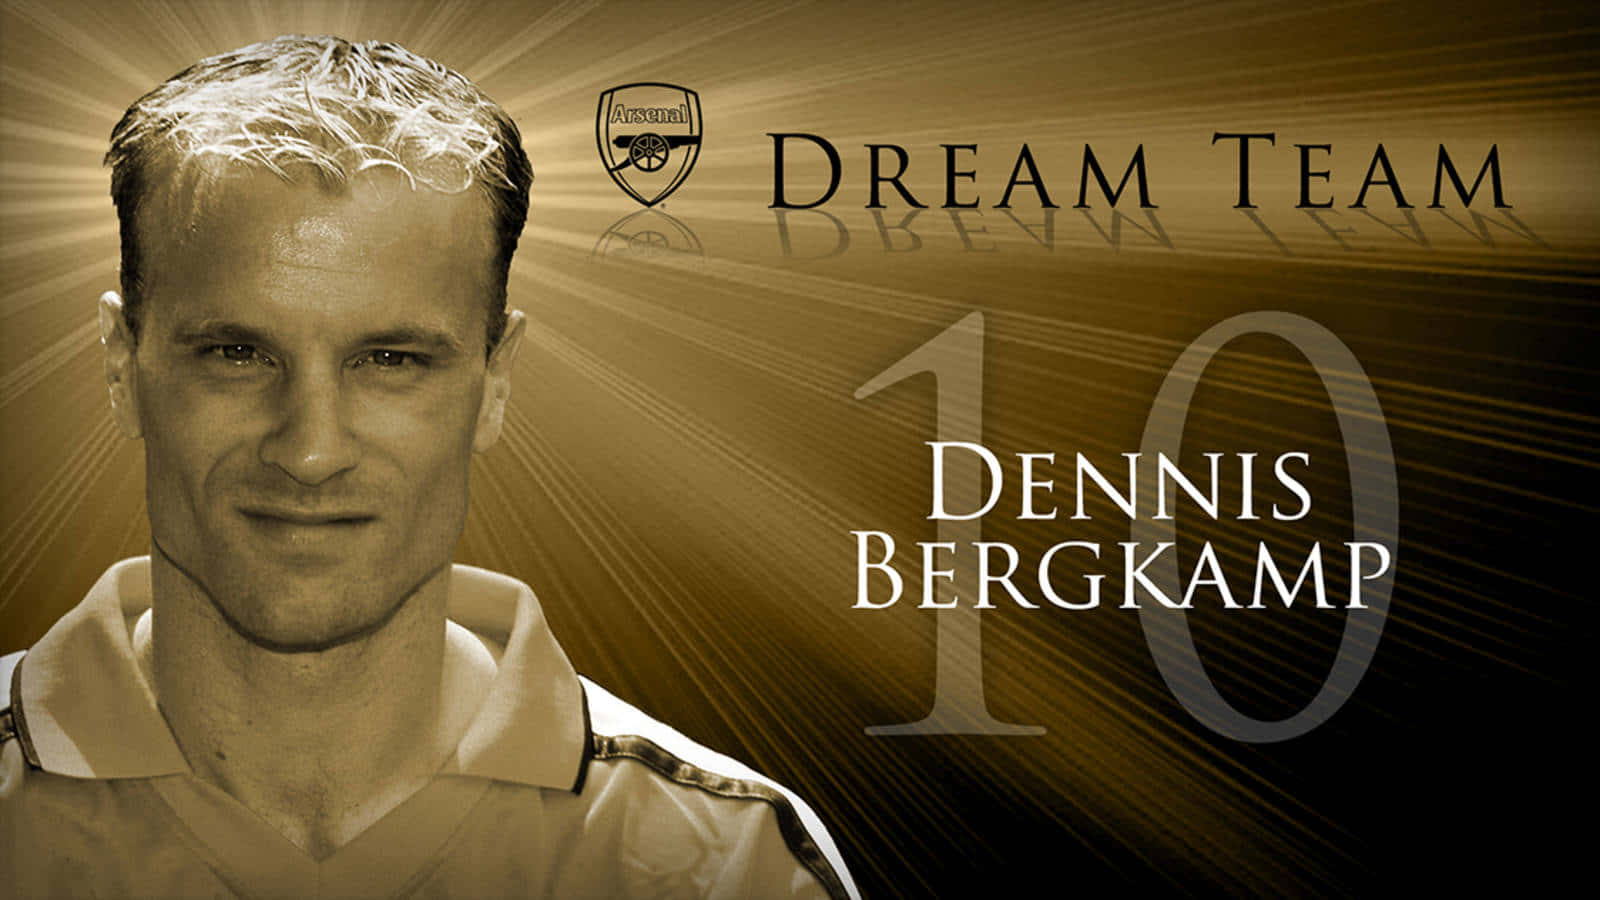 Dennis Bergkamp Arsenal Dream Team. Wallpaper